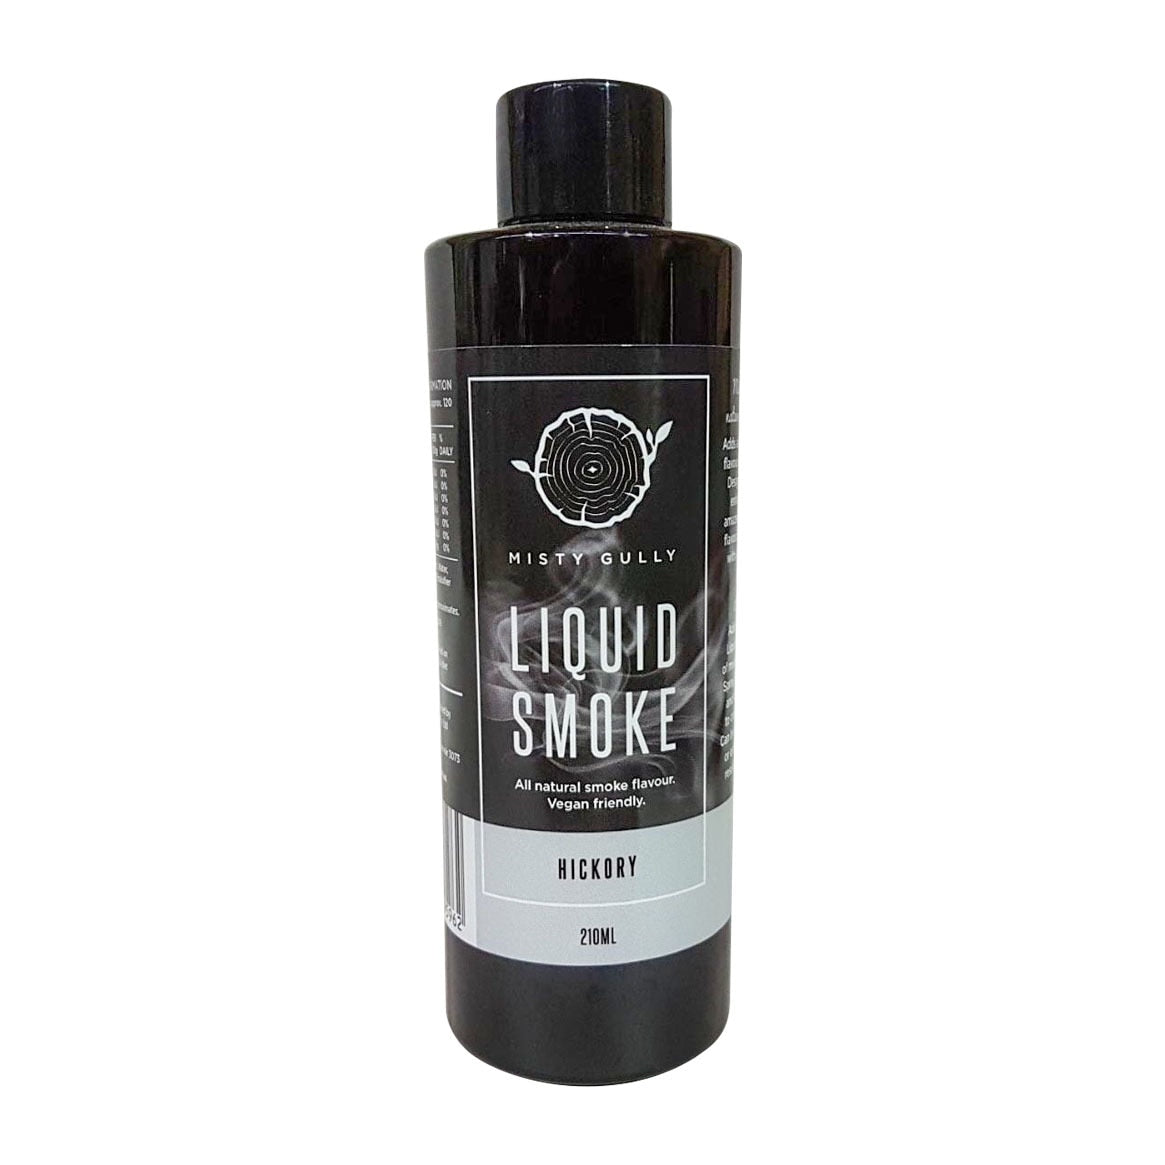 Smokin' — Wright's Liquid Smoke Flavor